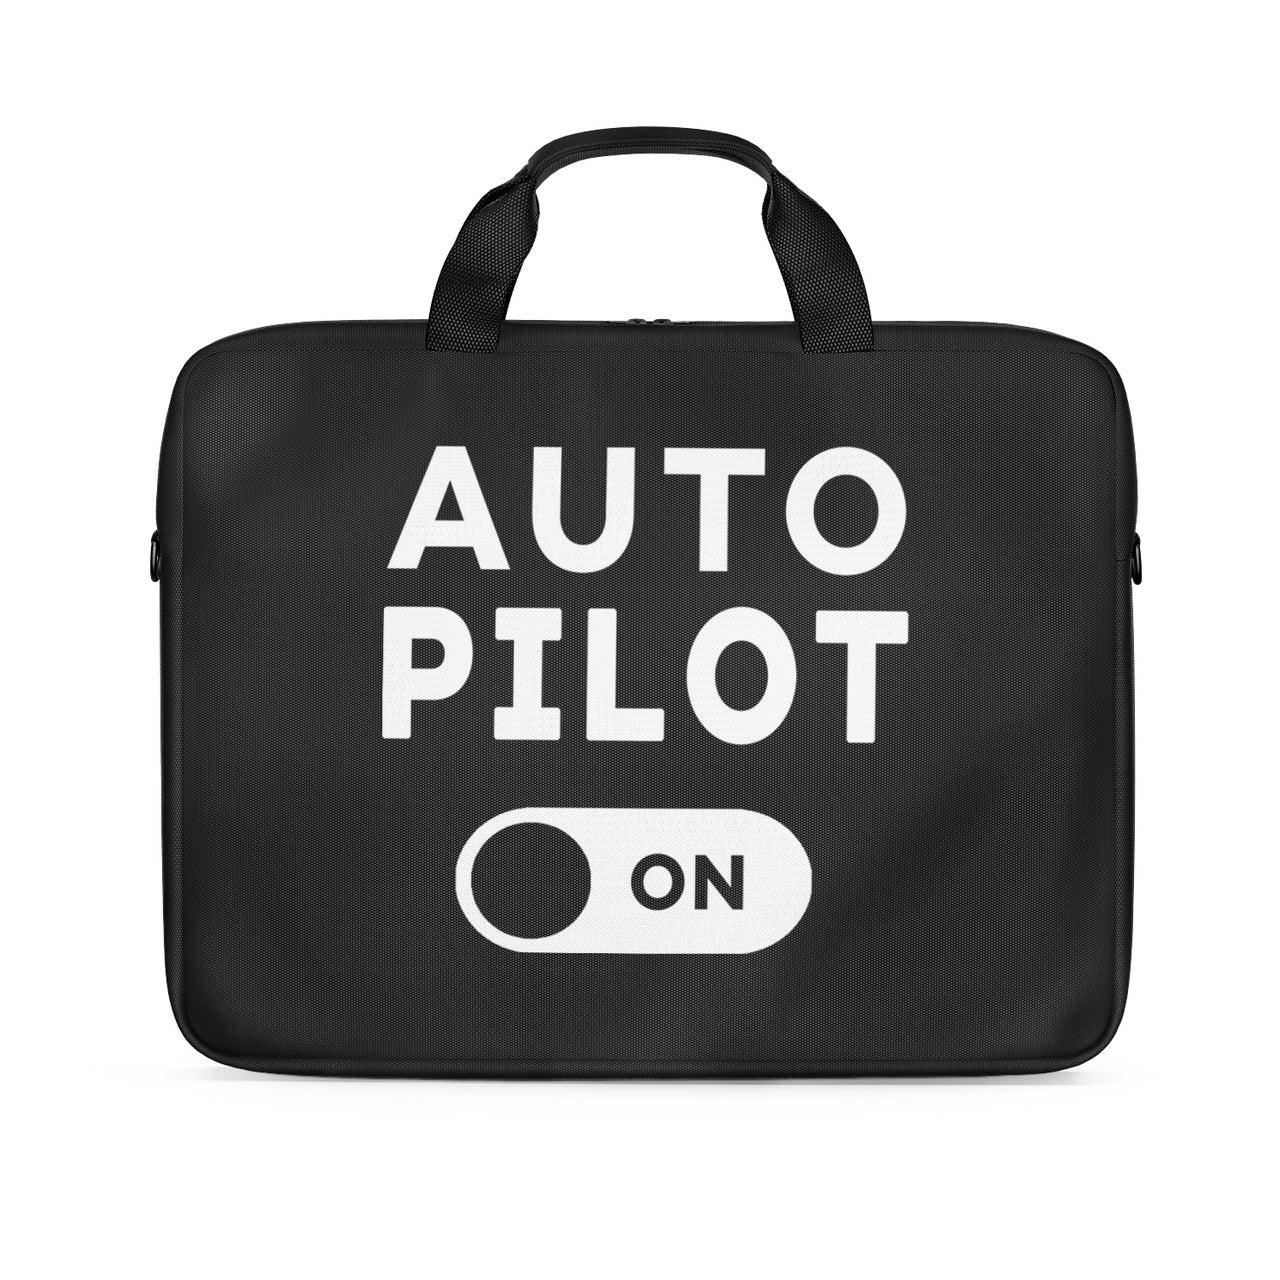 Auto Pilot ON Designed Laptop & Tablet Bags